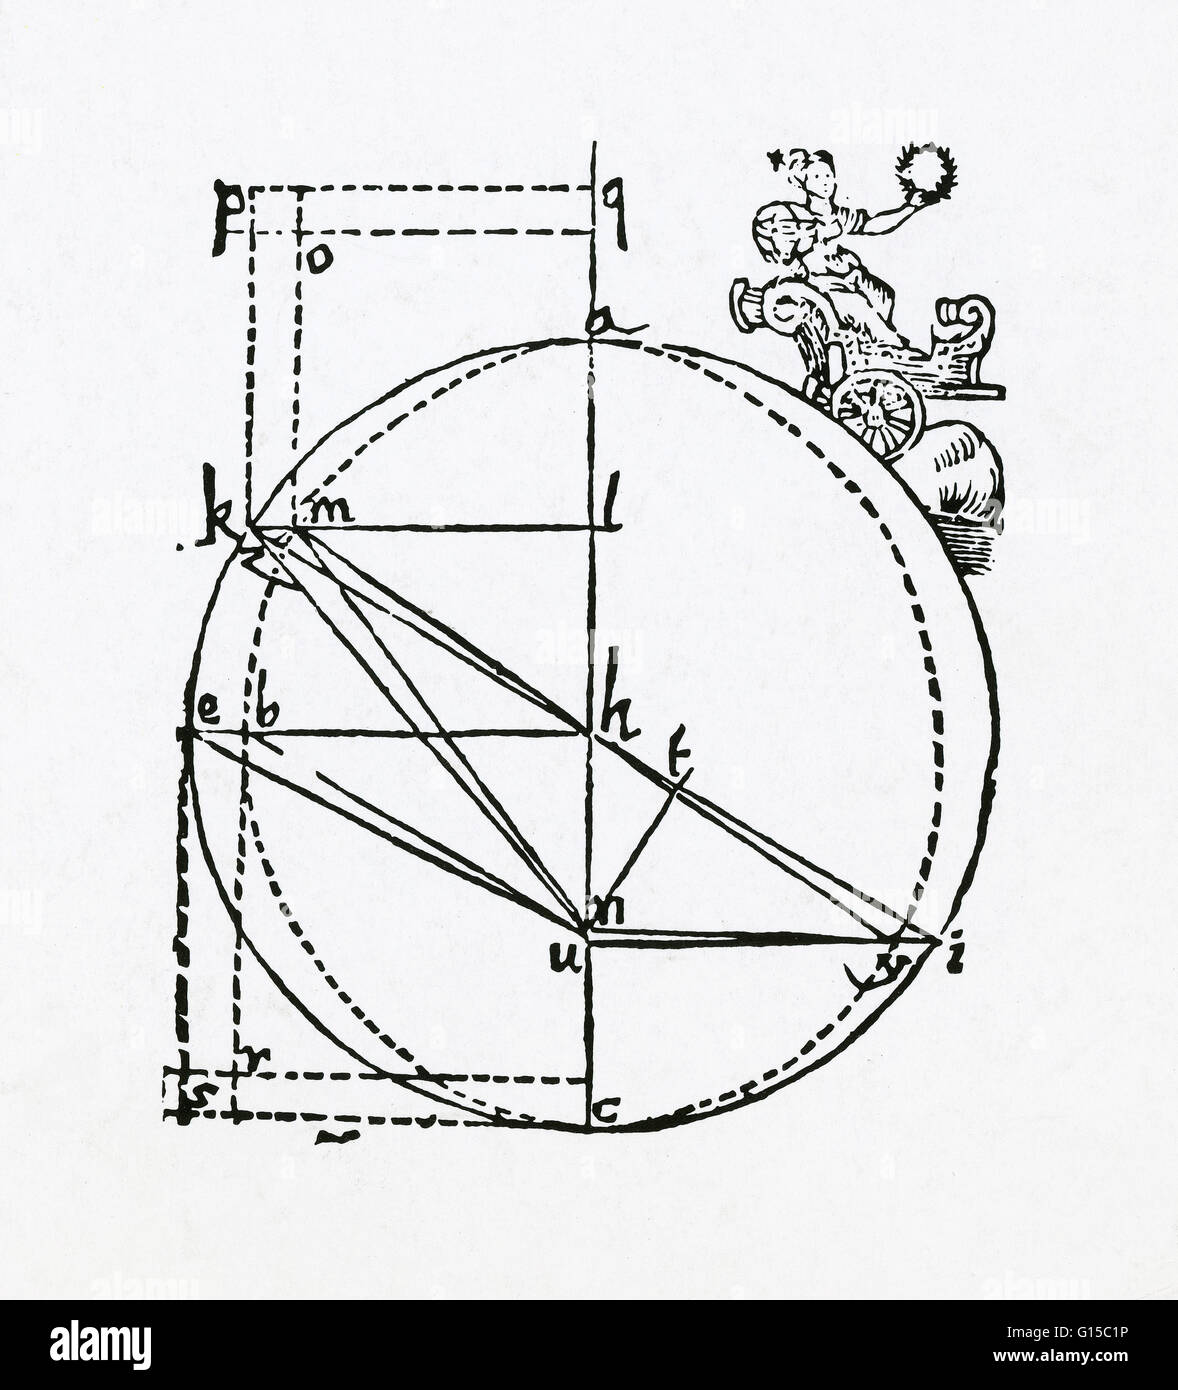 Deutscher Astronom Johannes Konzeptualisierung der Umlaufbahn des Mars. Kepler (1571-1630), entwickelten die drei grundlegenden Gesetze der Planetenbewegung. Diese Gesetze beruhten auf detaillierte Beobachtungen der Planeten von Tycho Brahe und selbst gemacht. Keplers Stockfoto